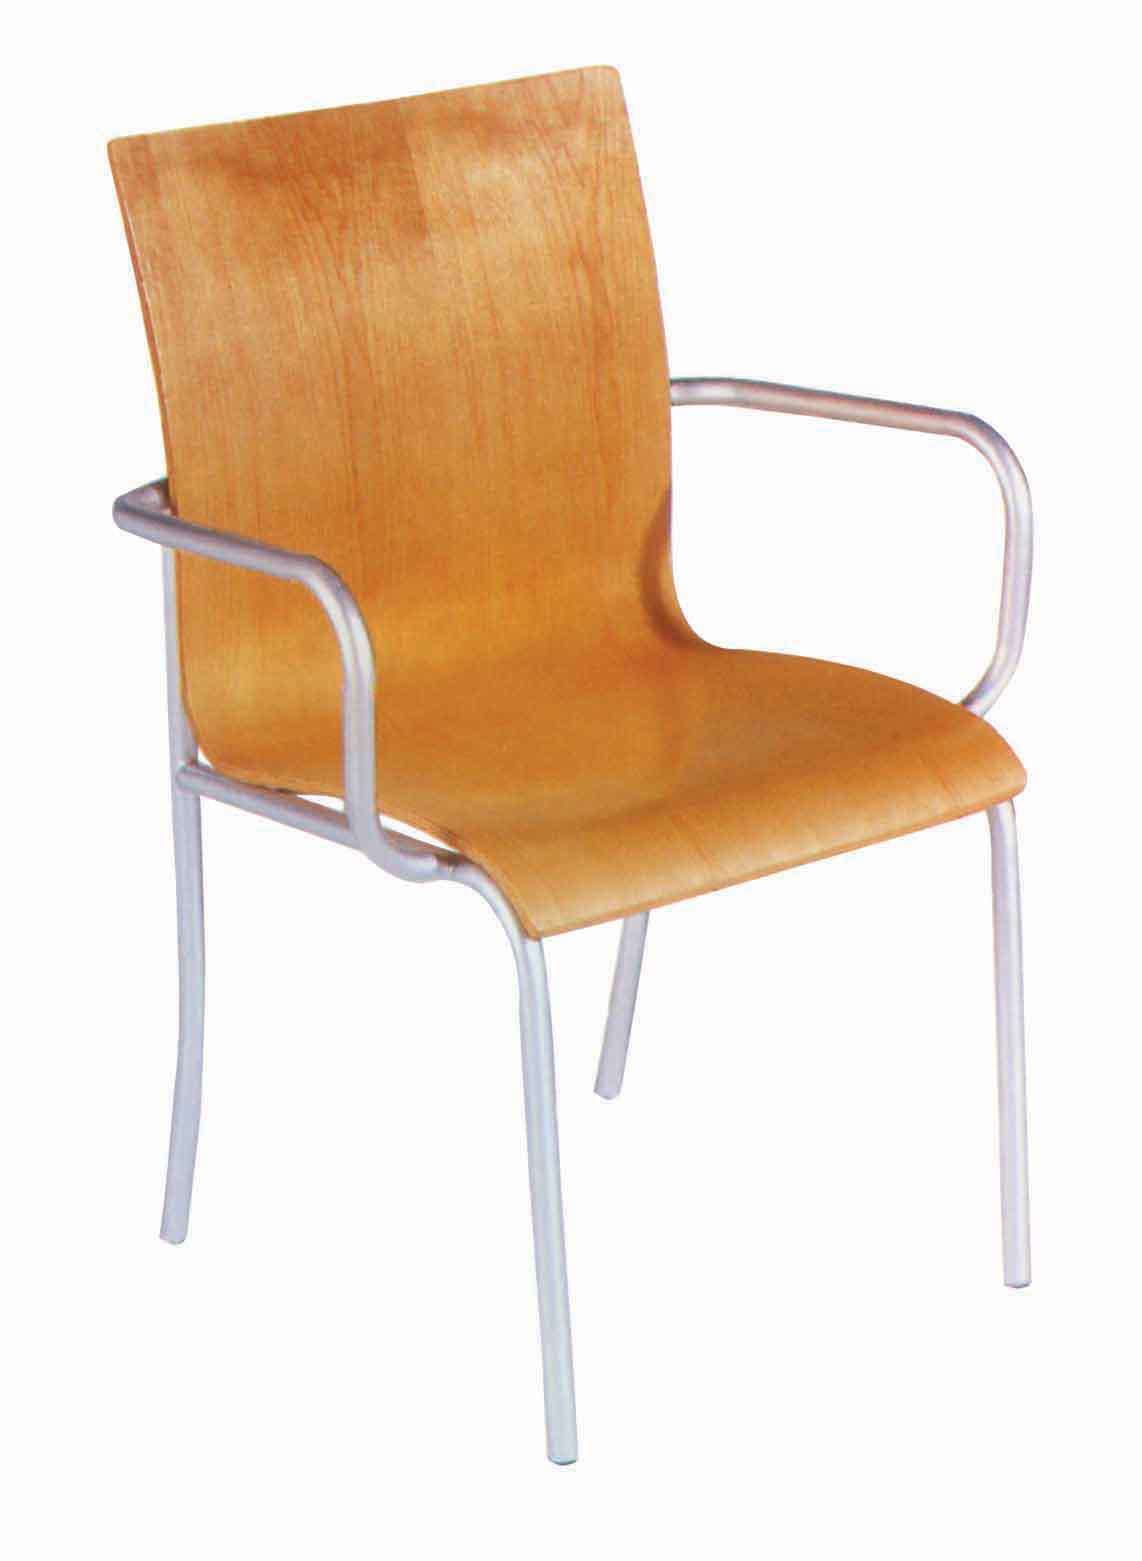 厂家直销曲木椅 弯板椅 麦肯餐椅 快餐椅子jb